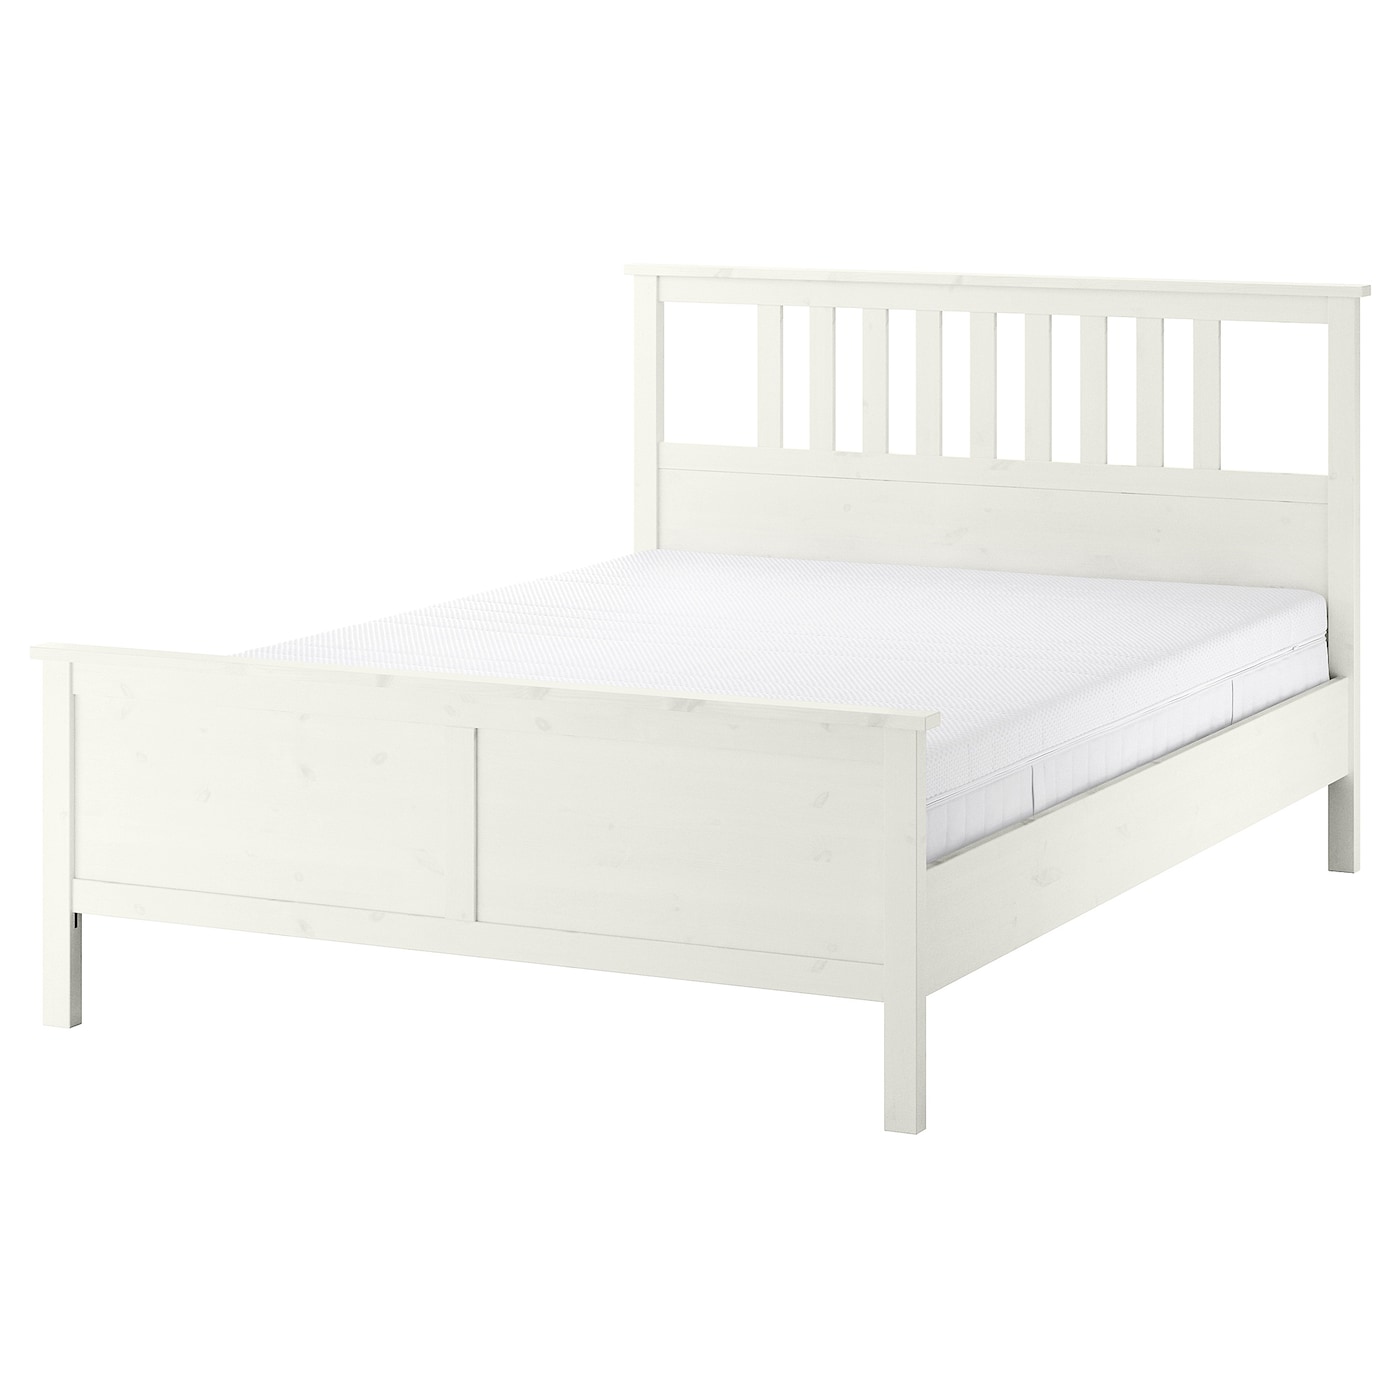 Кровать - IKEA HEMNES, 200х140 см, жесткий матрас, белый, ХЕМНЭС ИКЕА